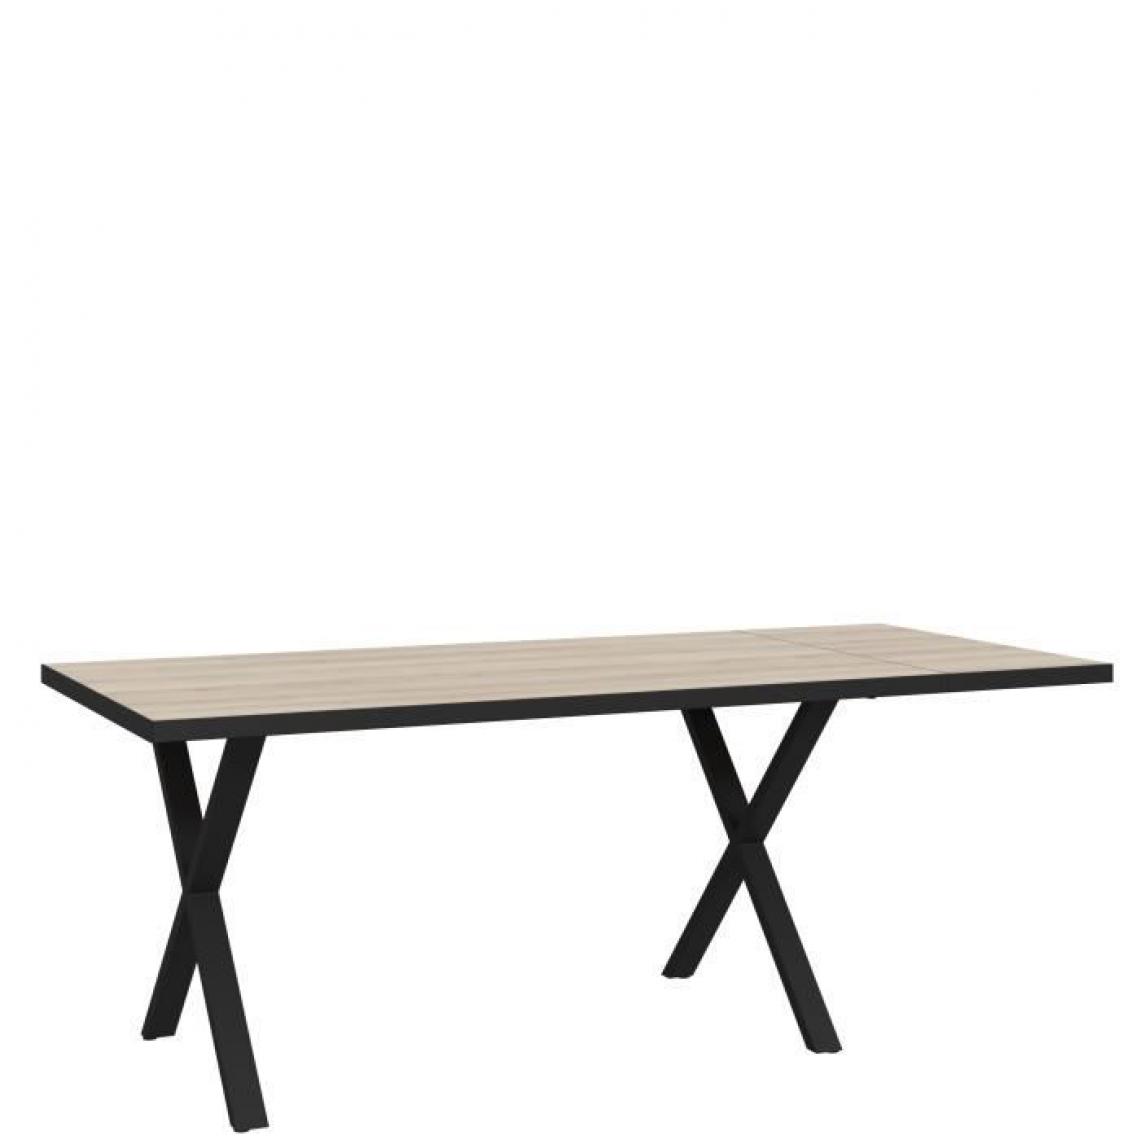 Cstore - CSTORE - table à manger 160x90 cm + rallonge - pieds en métal - décor chêne comano - l 160 (+ 40) xp 90xh 75, 8 cm - carea - Tables à manger